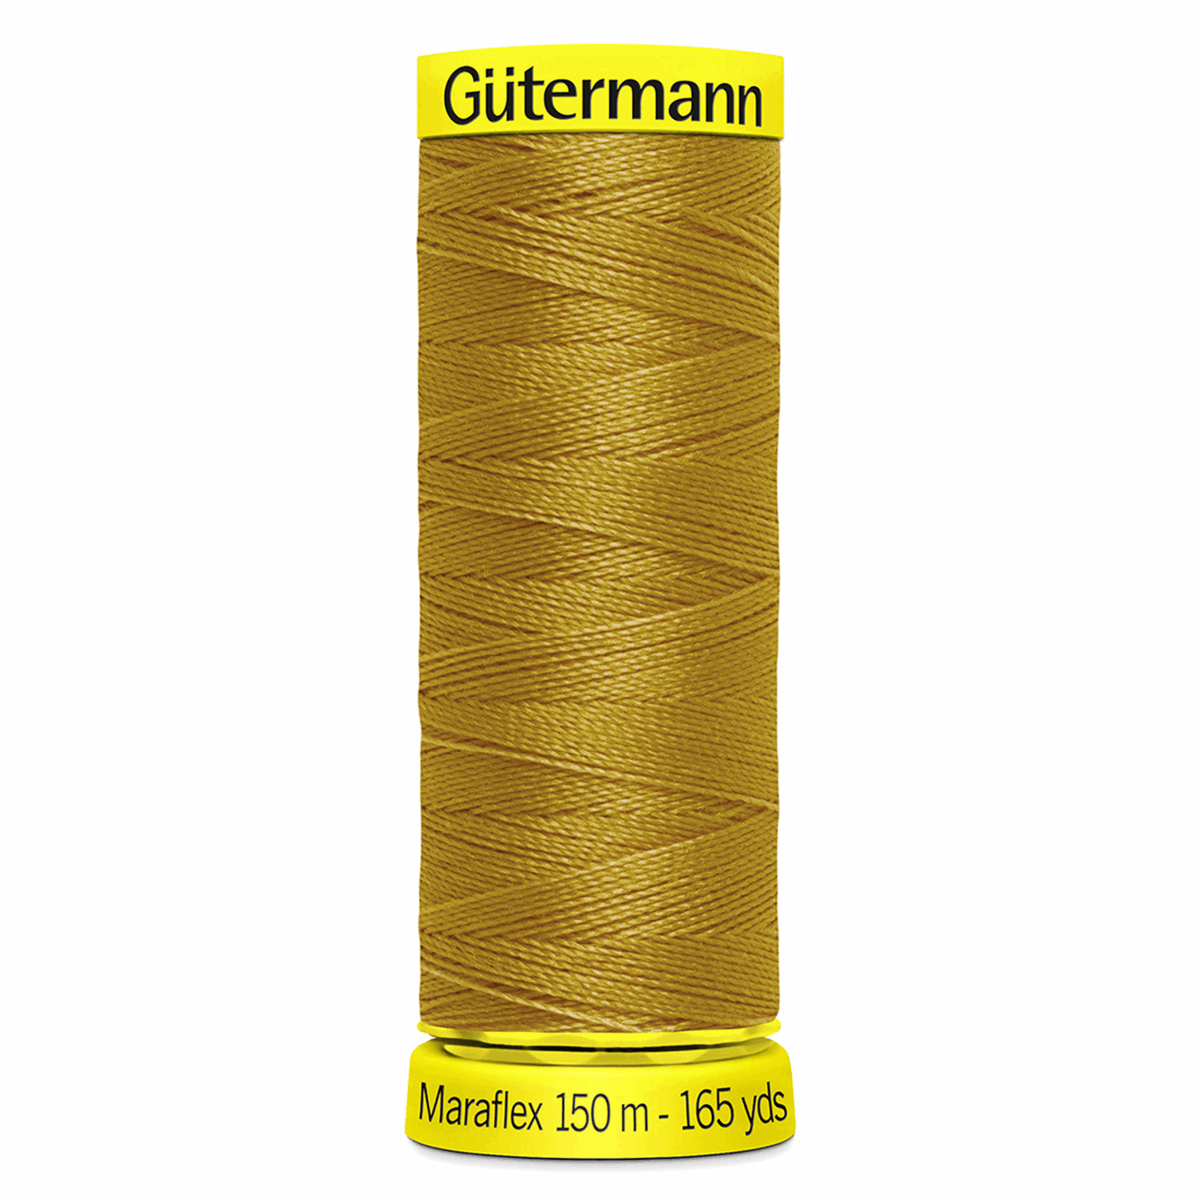 Gutermann Maraflex Elastic Sewing Thread 150m Gingerbread 968